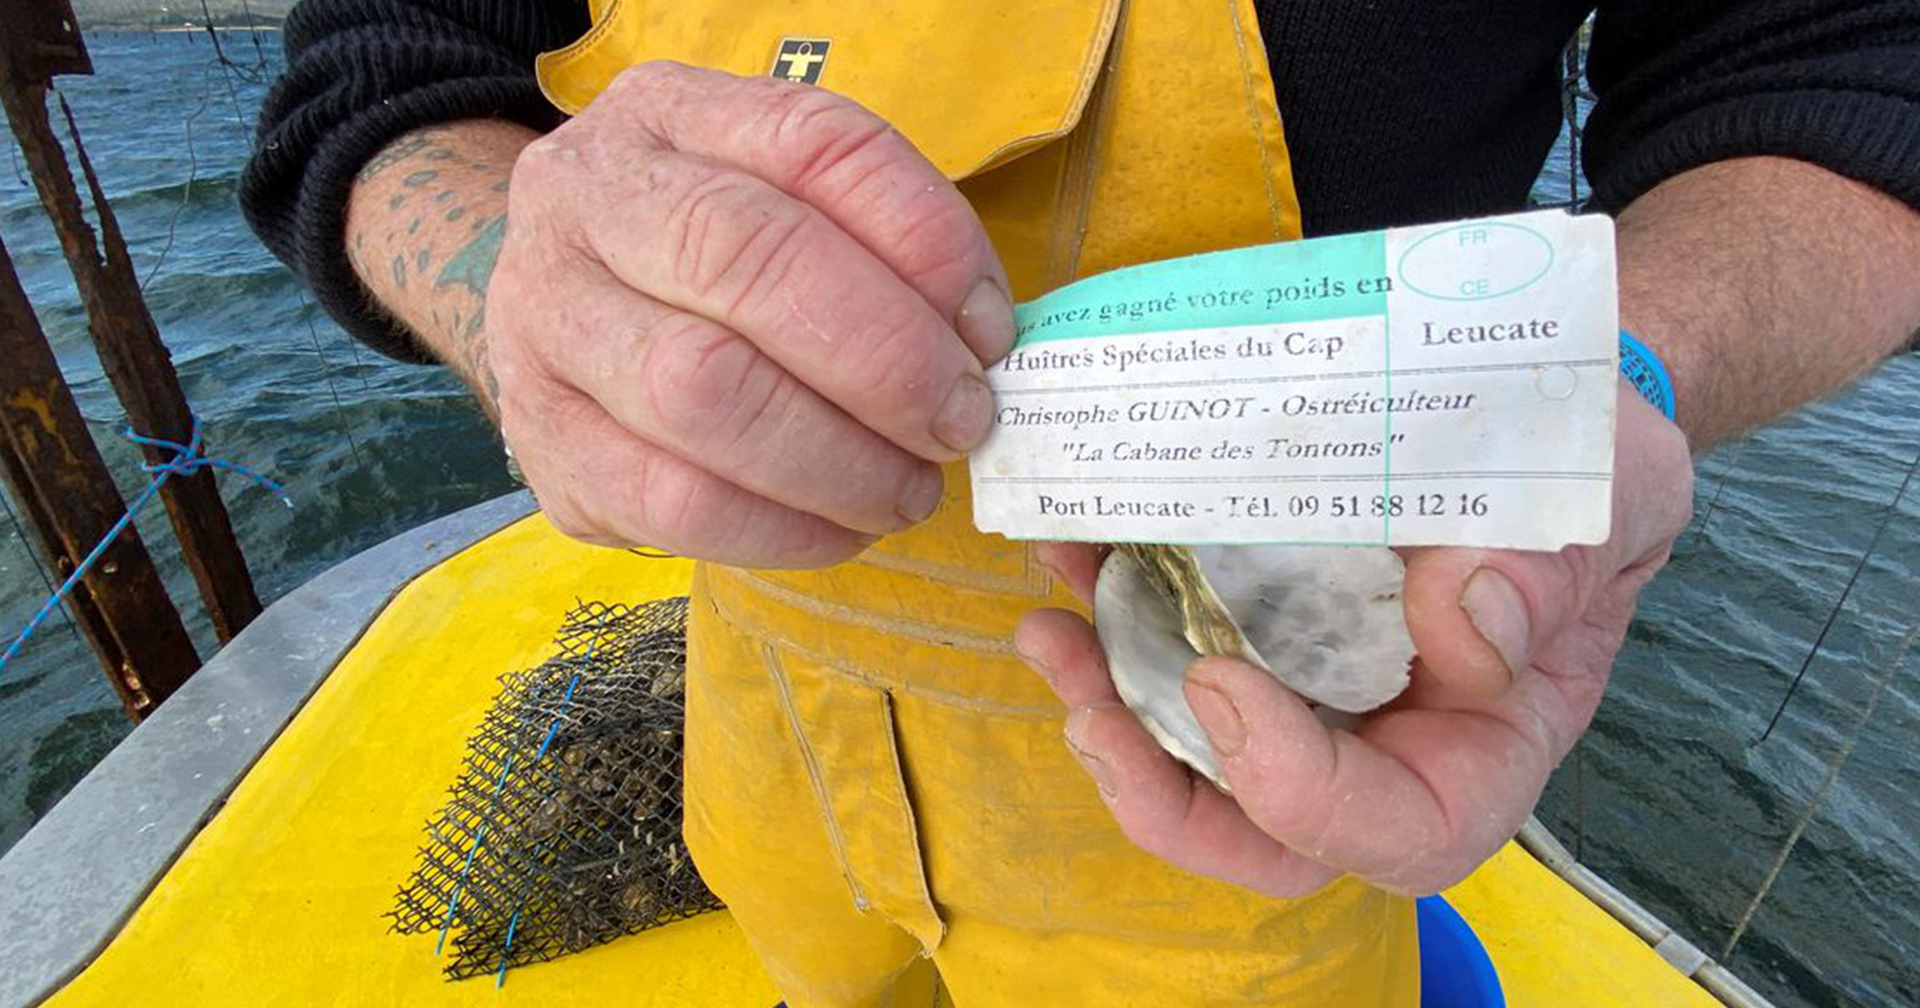 เจ้าของฟาร์มหอยนางรม ผุดไอเดียยัด ‘กระดาษชิงโชค’ ในหอย ป้องกันโจรขโมย